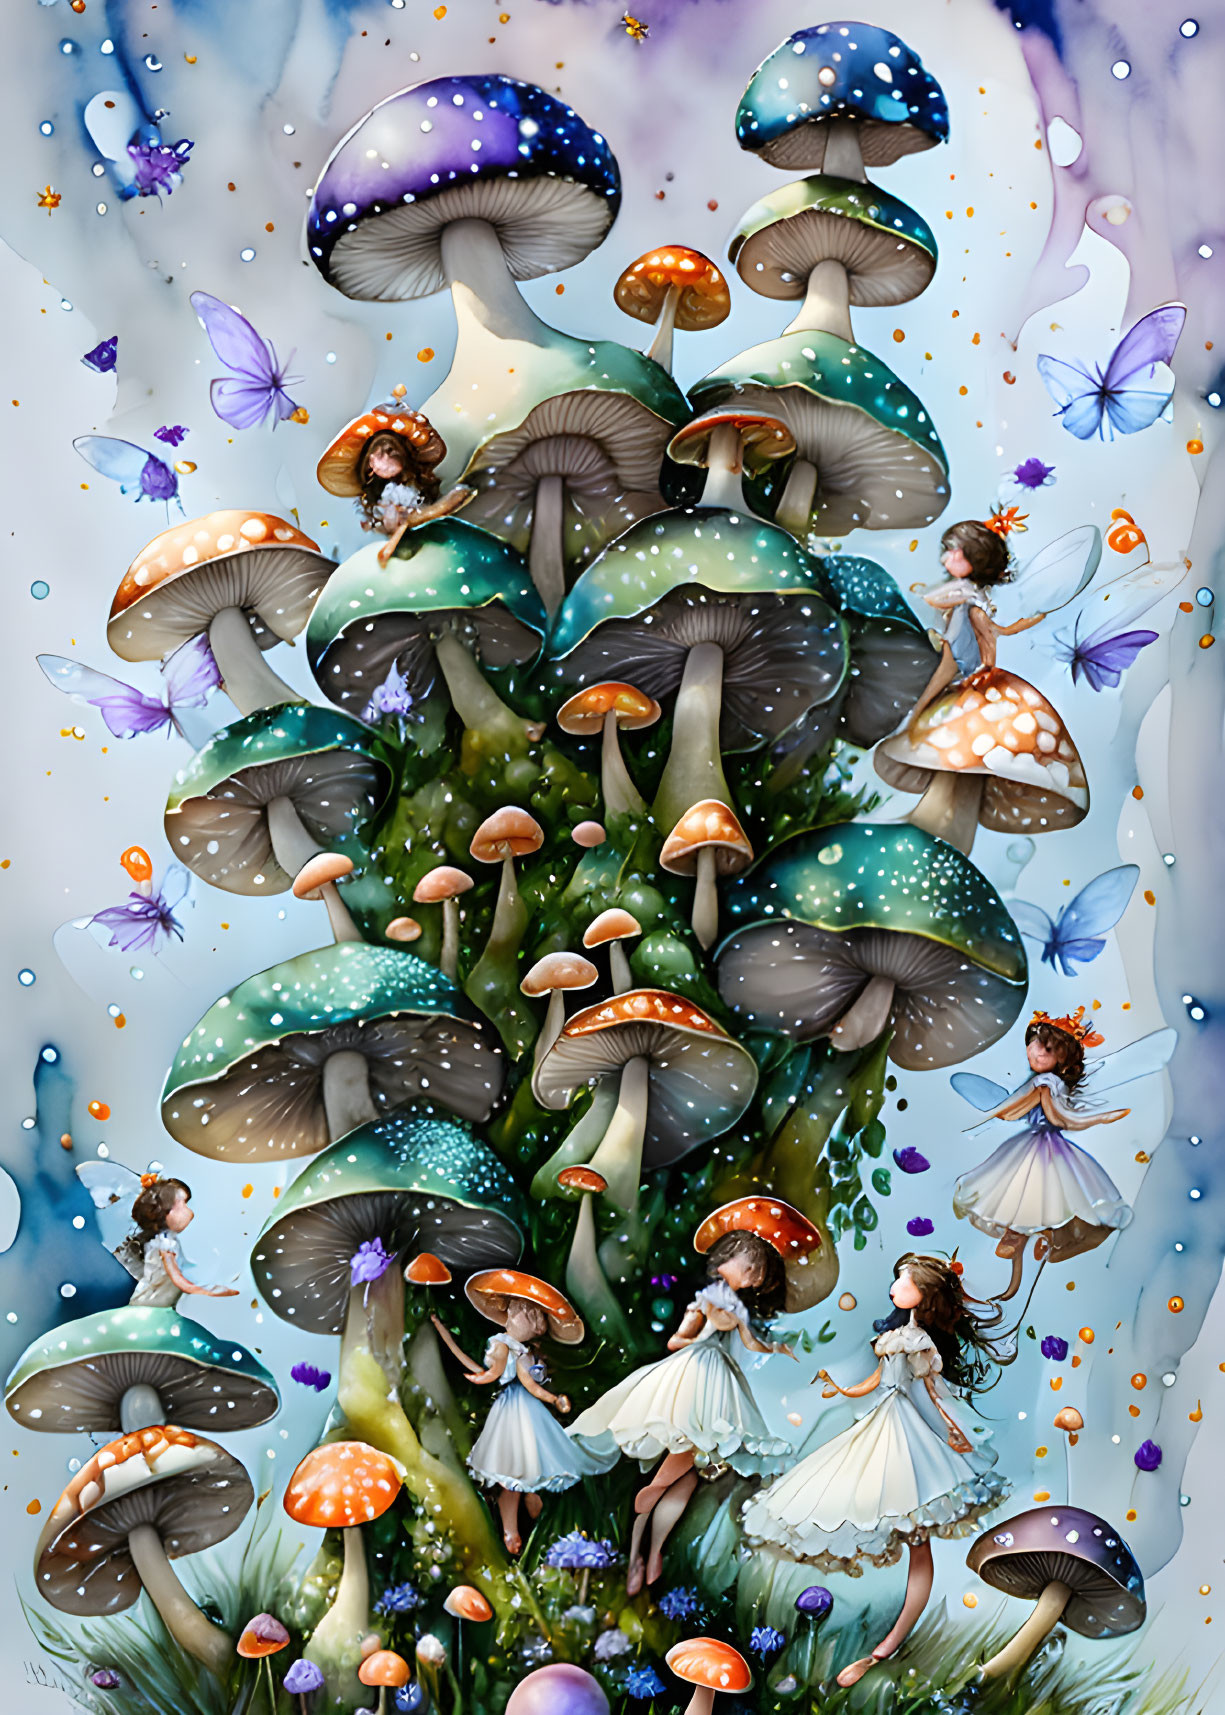 Mushroom and fairies